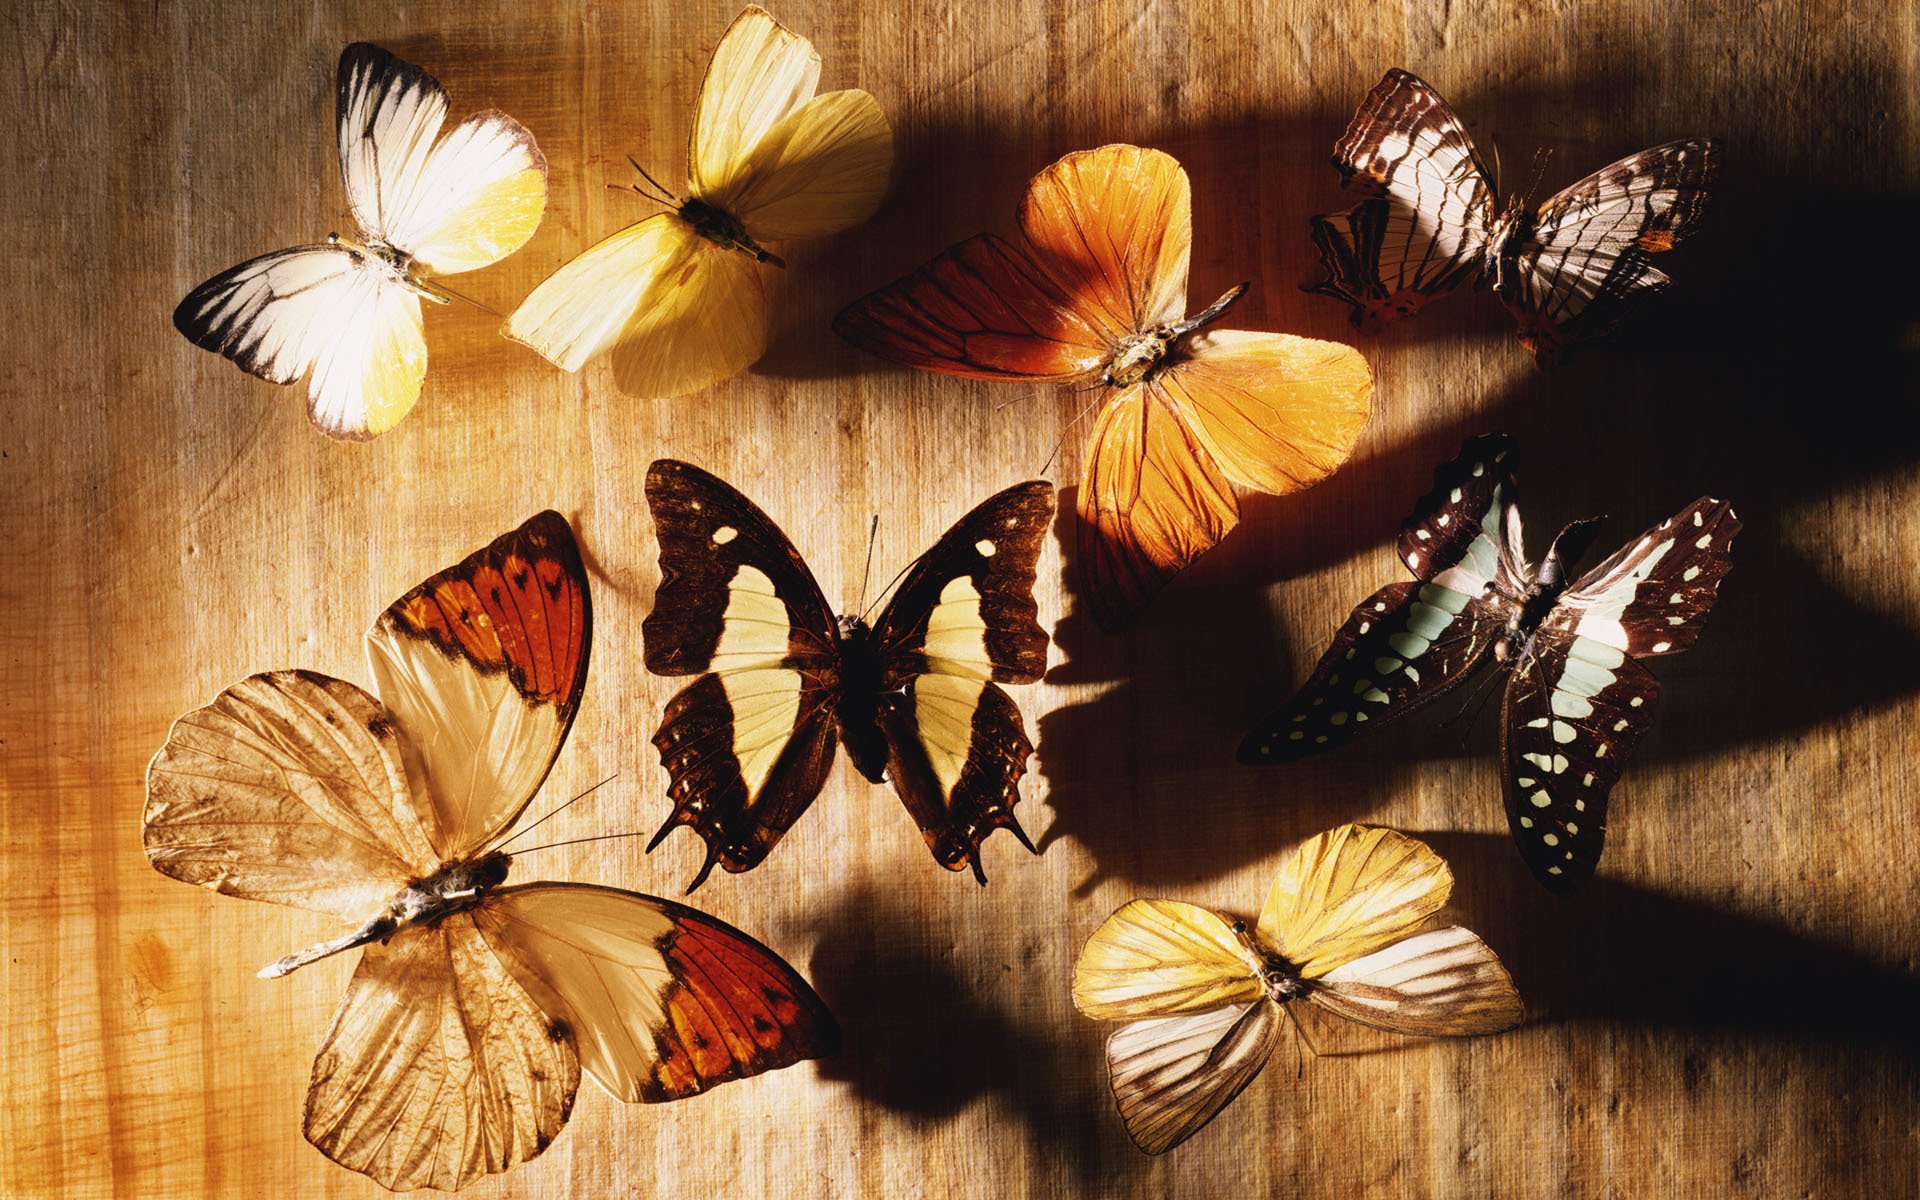 Обои на стол бабочки. Обои с бабочками. Красивый фон с бабочками. Заставка на рабочий стол бабочки. Бабочки в природе.